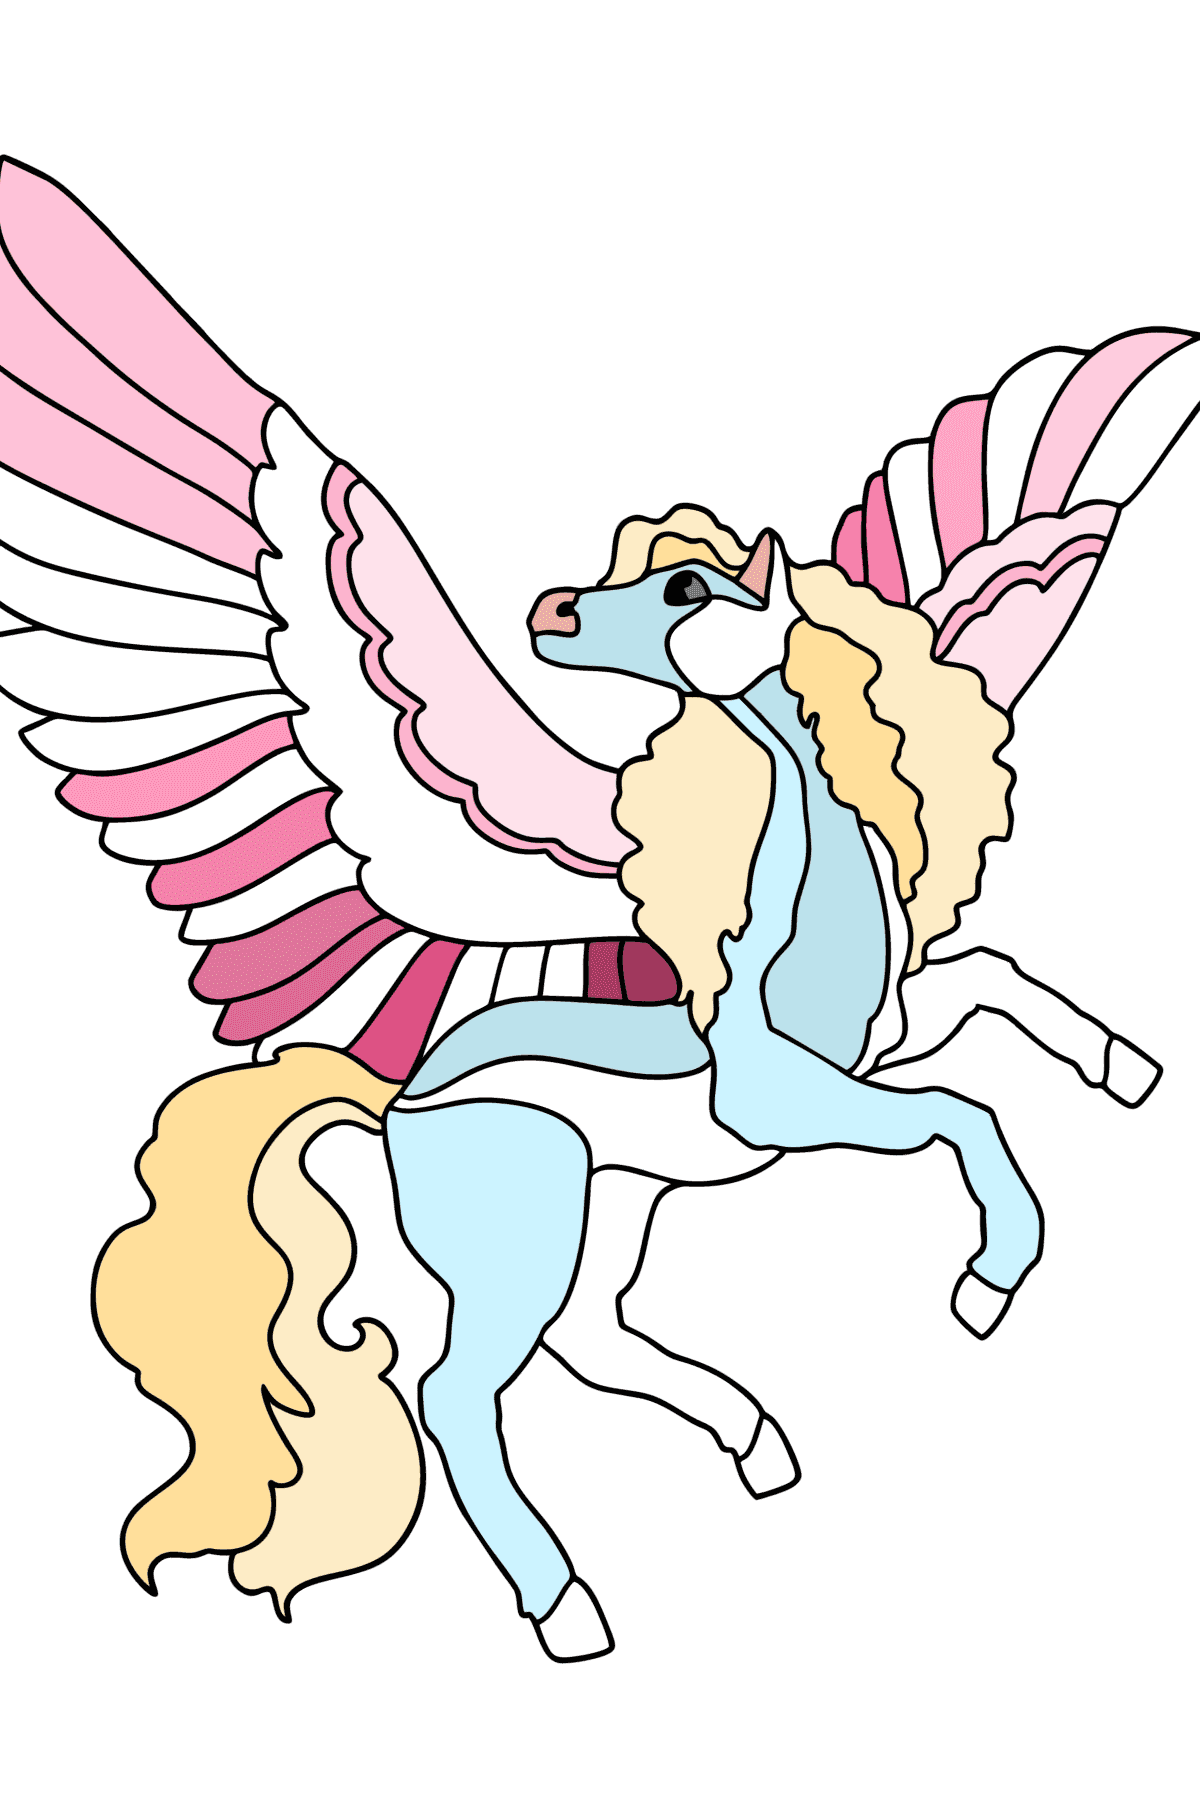 Målarbild Pegasus med rosa vingar - Målarbilder För barn